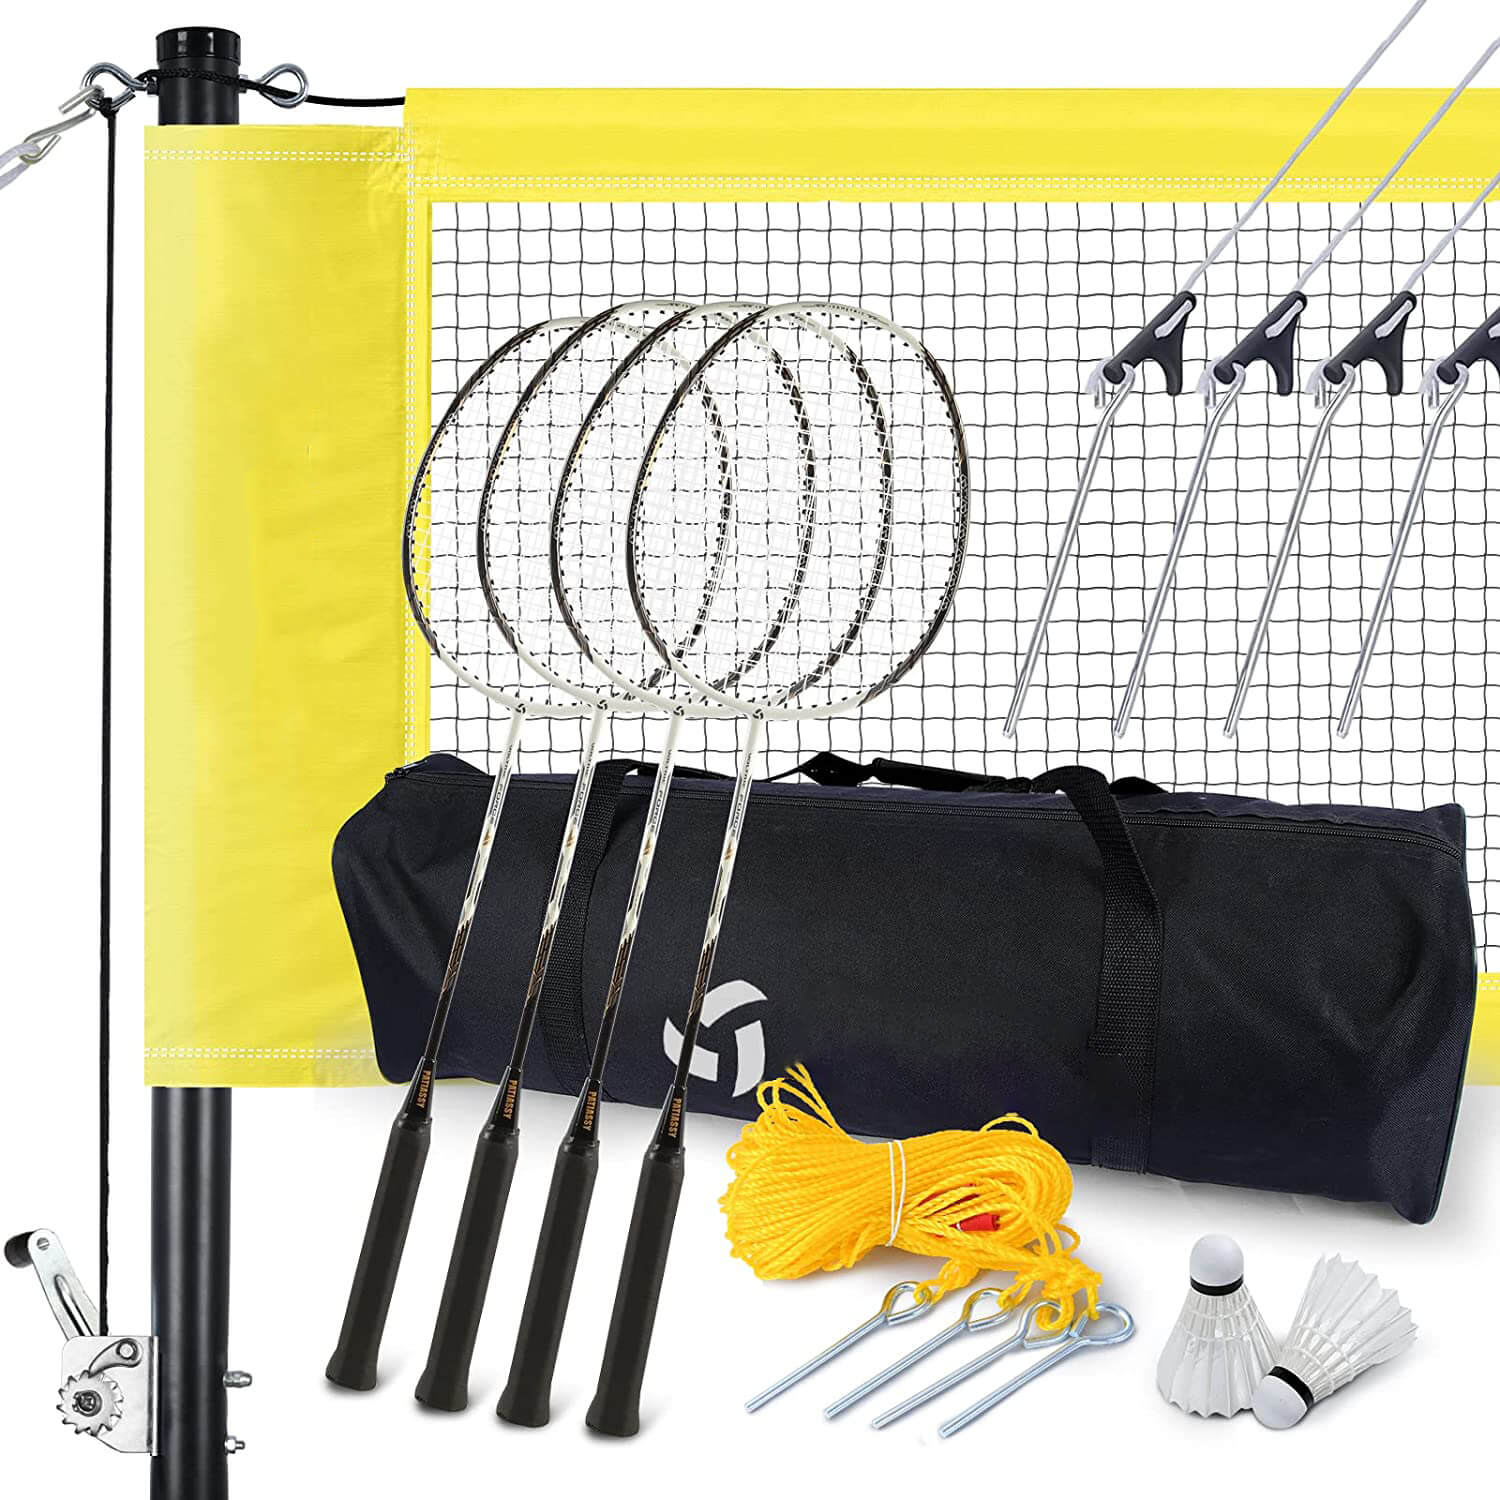 Professional Badminton Set for Backyard Beach Outdoor Portable Badminton Net